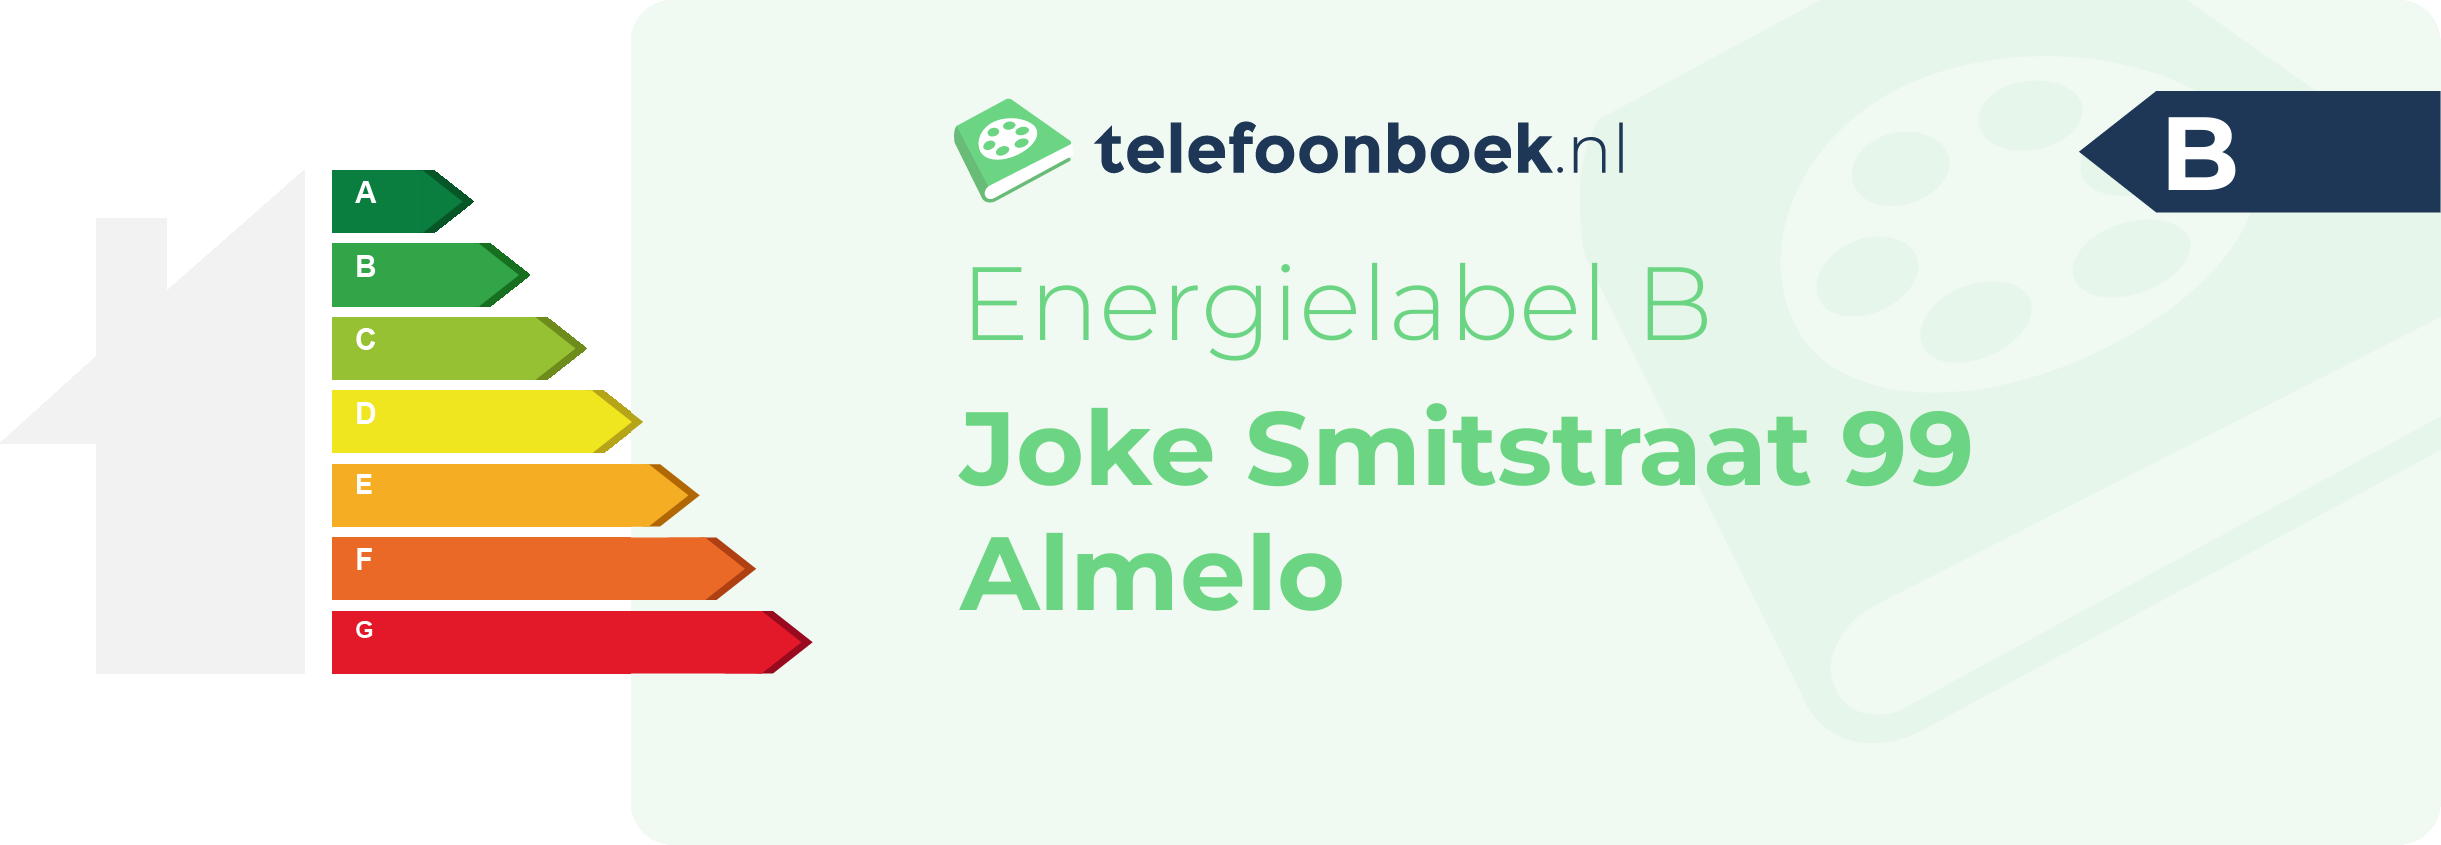 Energielabel Joke Smitstraat 99 Almelo